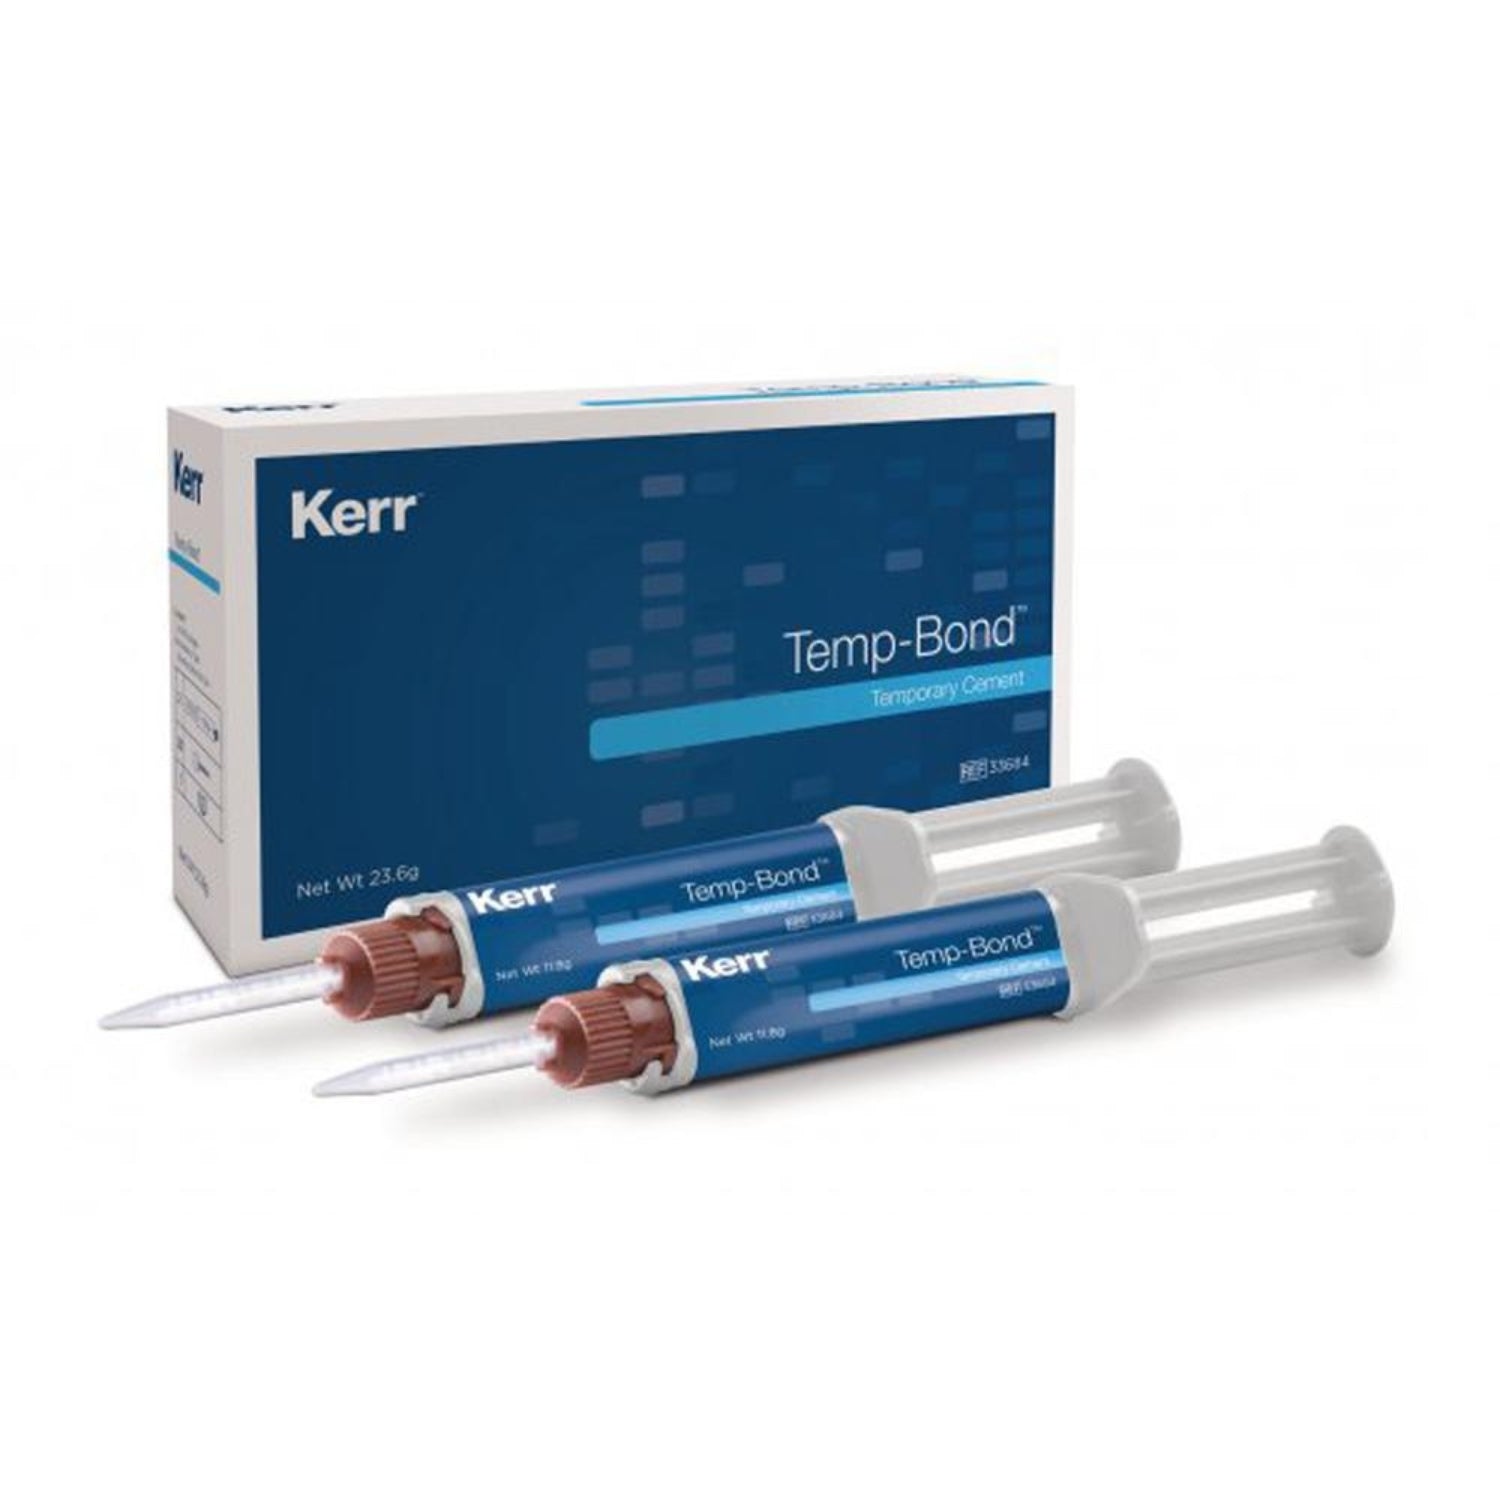 kerr-temp-bond-dental-temporary-cement-118g-automix-syringe-2pk